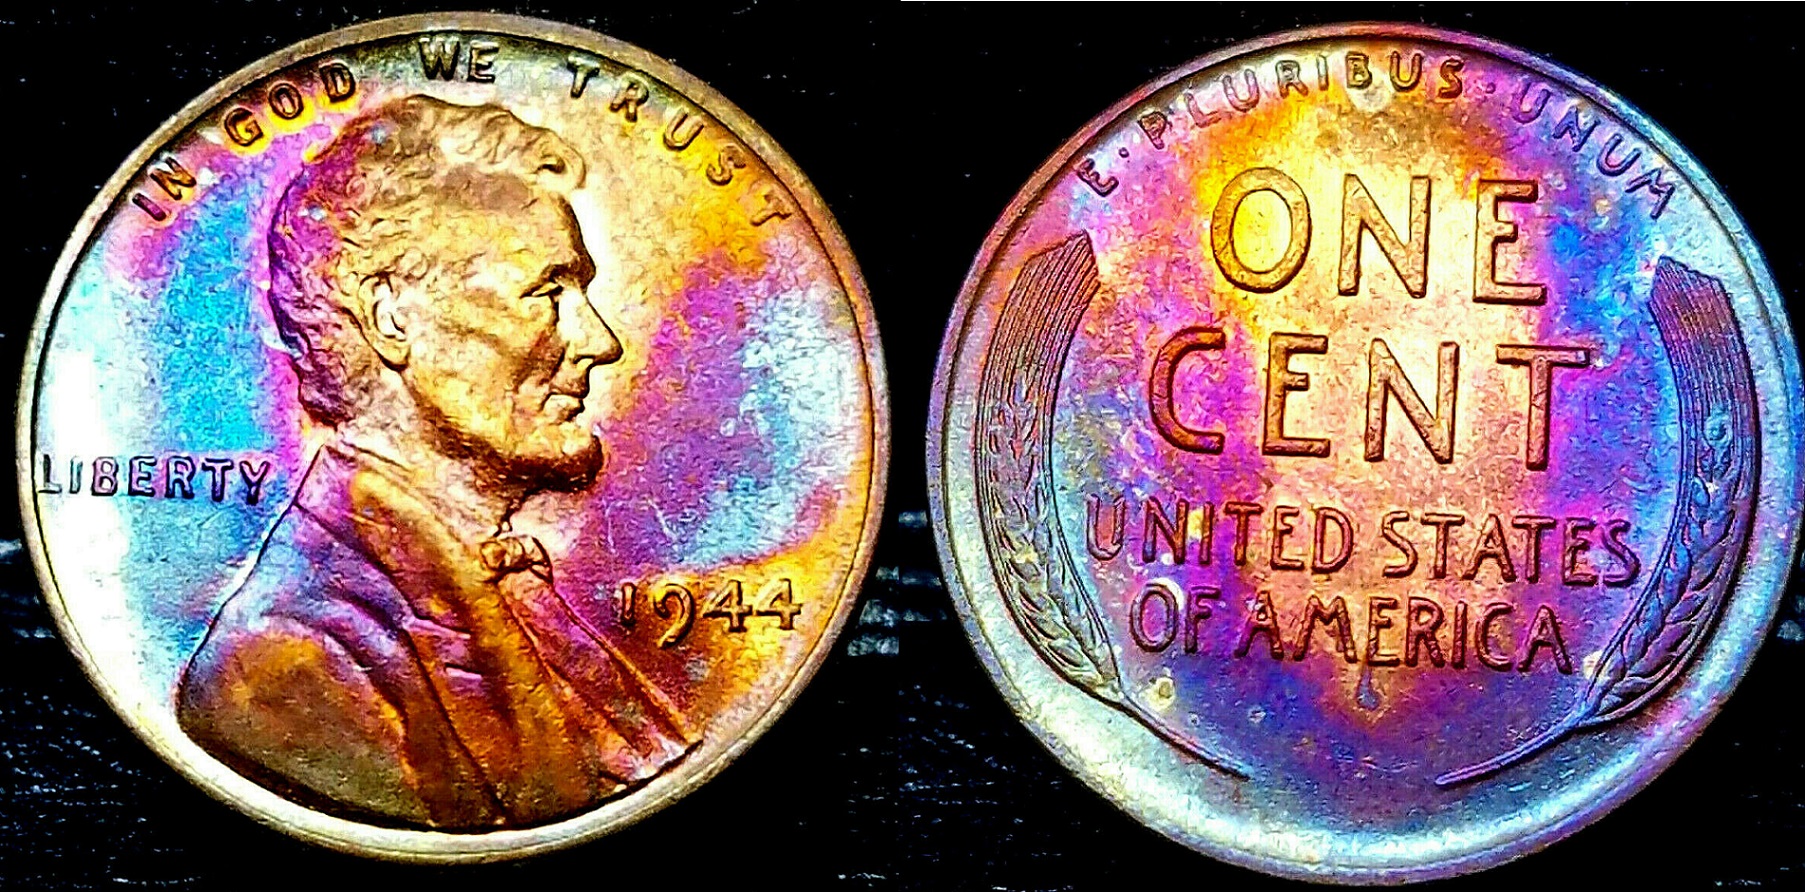 1944- Lincoln Cent - Toned Superb Ms++ Gem++  $6.67 + 000  283948546499  bdoubrava12012 o.jpg